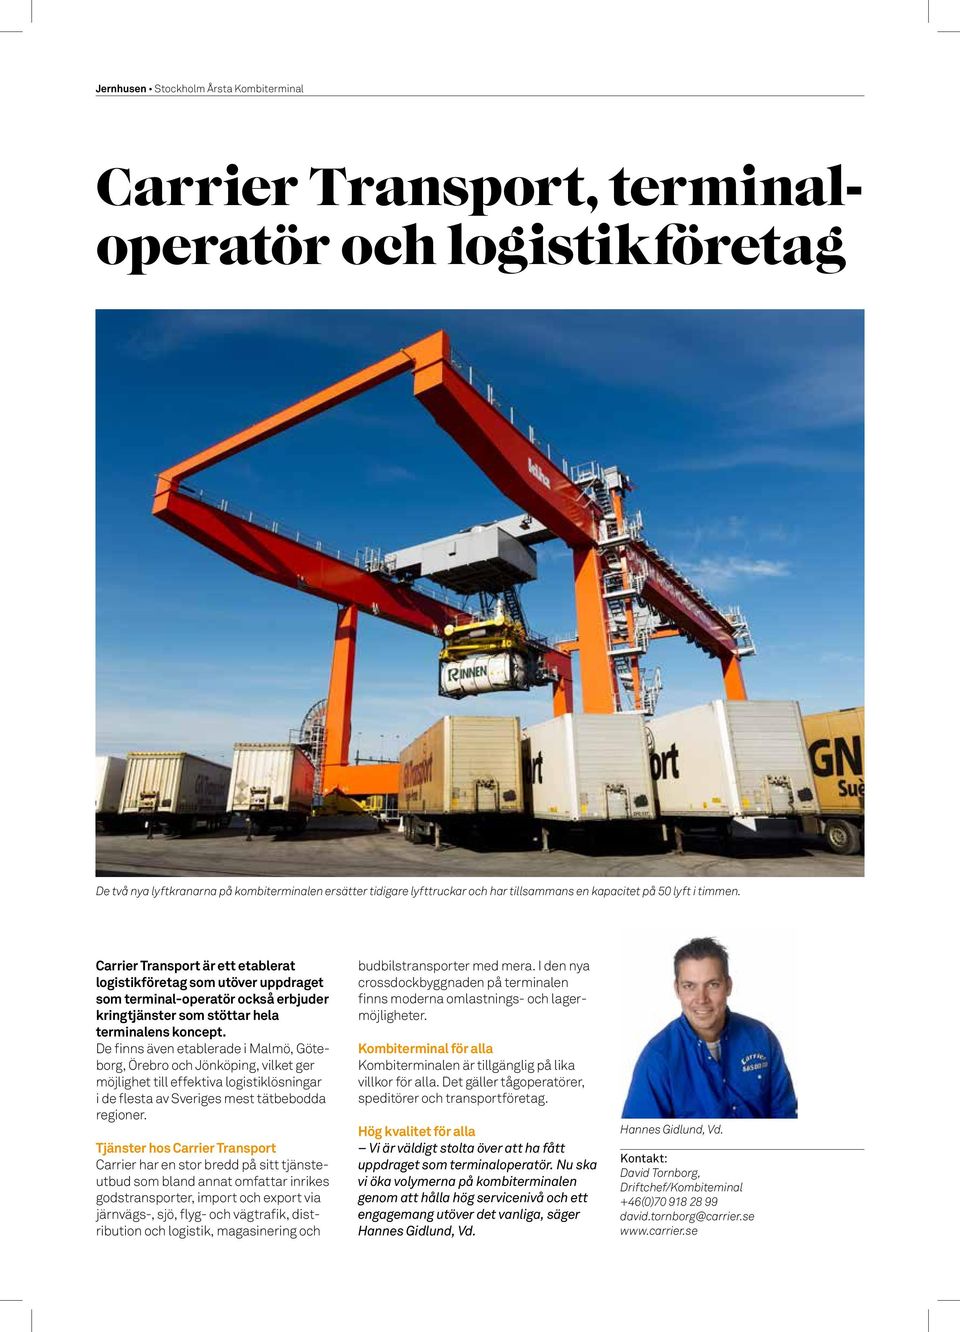 De finns även etablerade i Malmö, Göteborg, Örebro och Jönköping, vilket ger möjlighet till effektiva logistiklösningar i de flesta av Sveriges mest tätbebodda regioner.